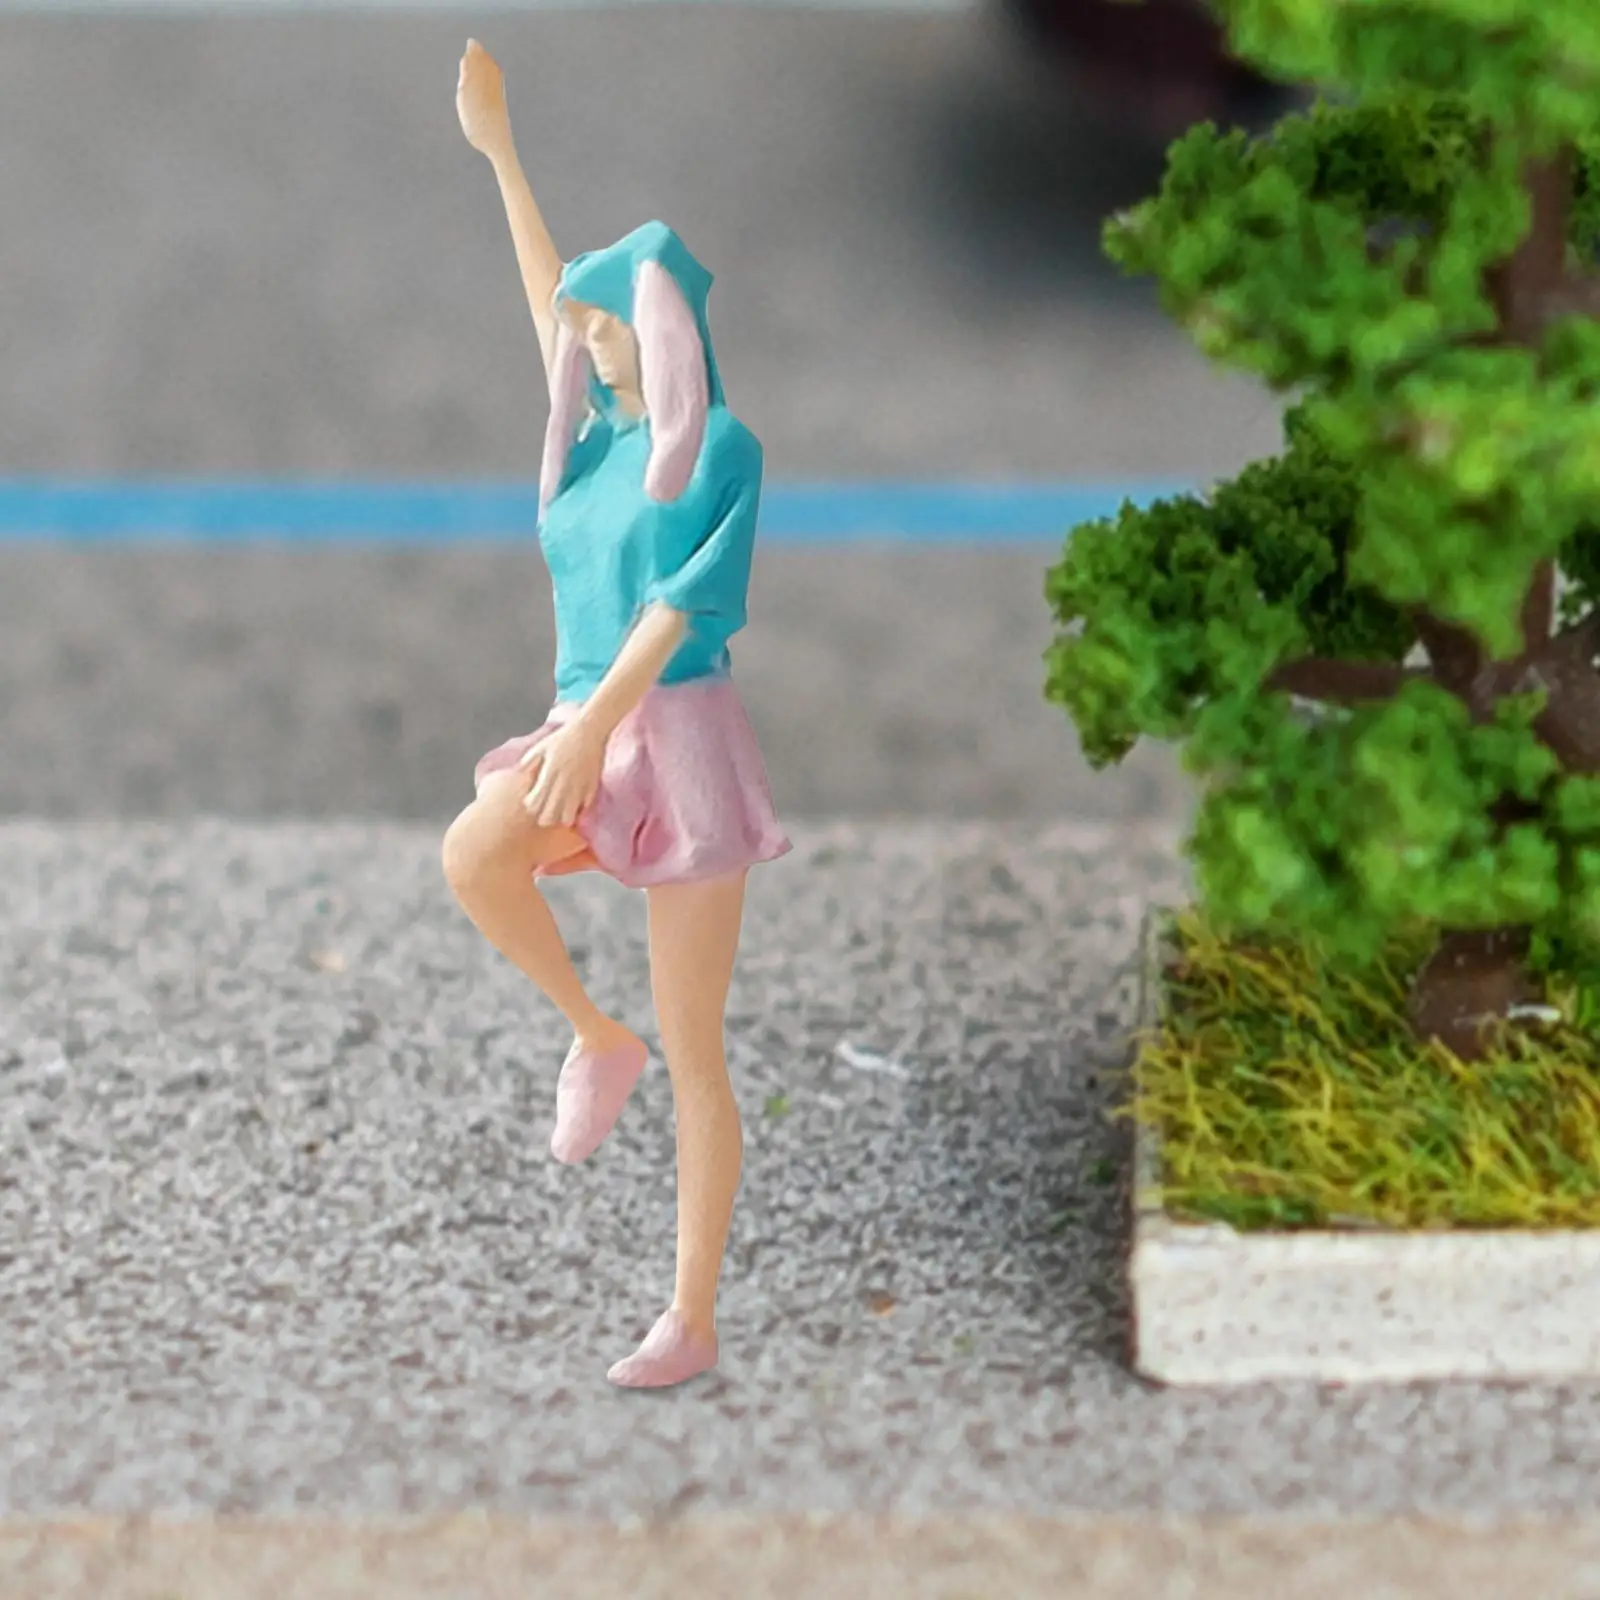 1/64 Scale Diorama Figure for Photo Props Desktop Ornament Micro Landscape